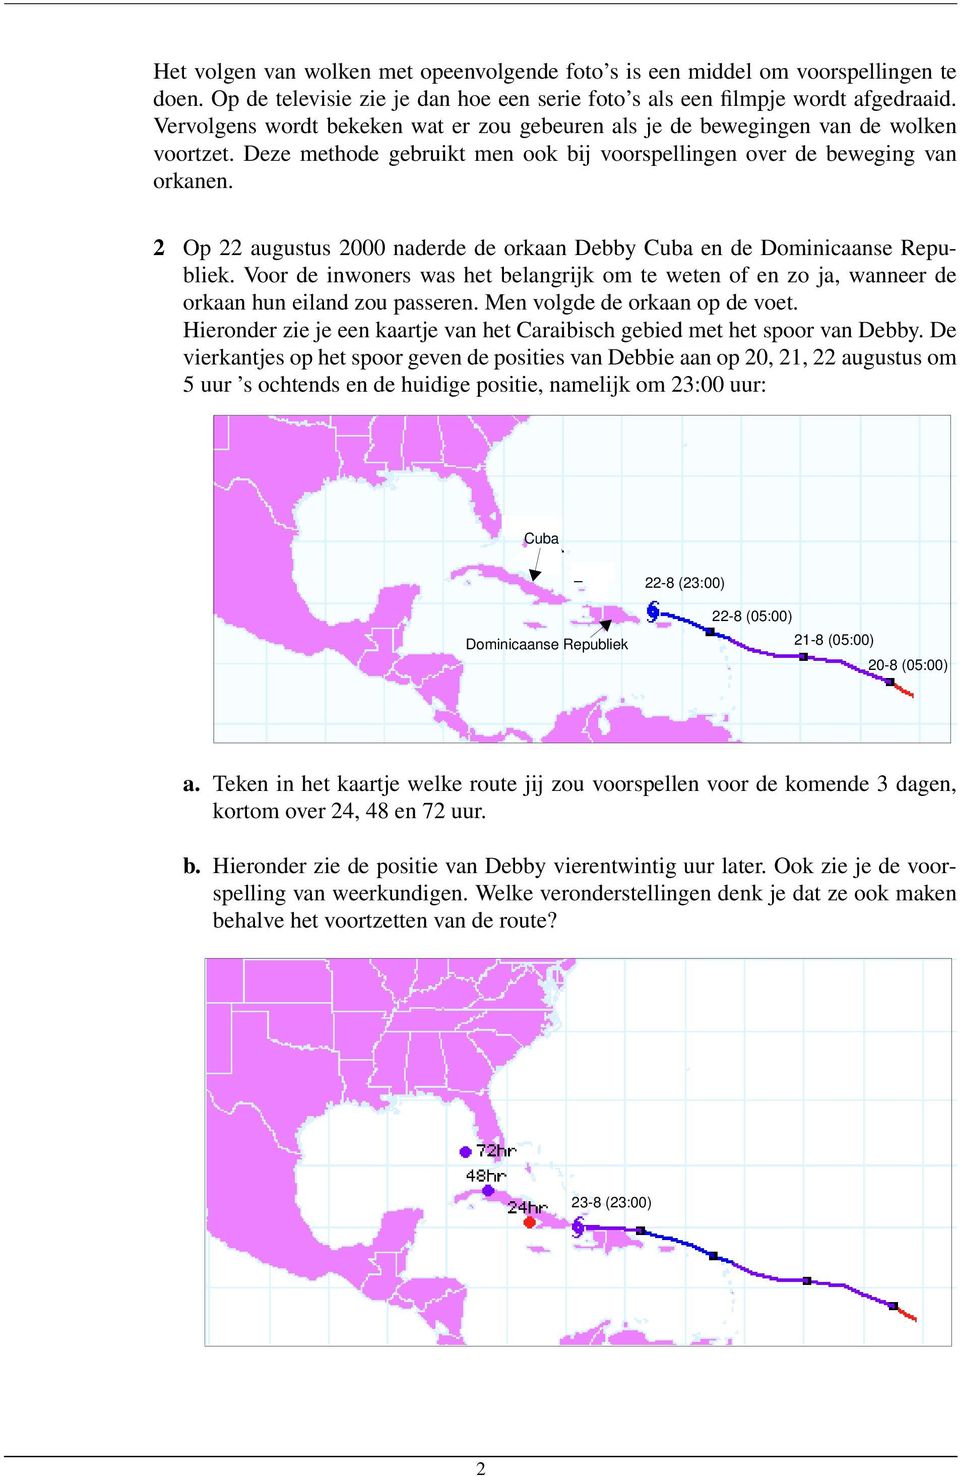 2 Op 22 augustus 2000 naderde de orkaan Debby Cuba en de Dominicaanse Republiek. Voor de inwoners was het belangrijk om te weten of en zo ja, wanneer de orkaan hun eiland zou passeren.